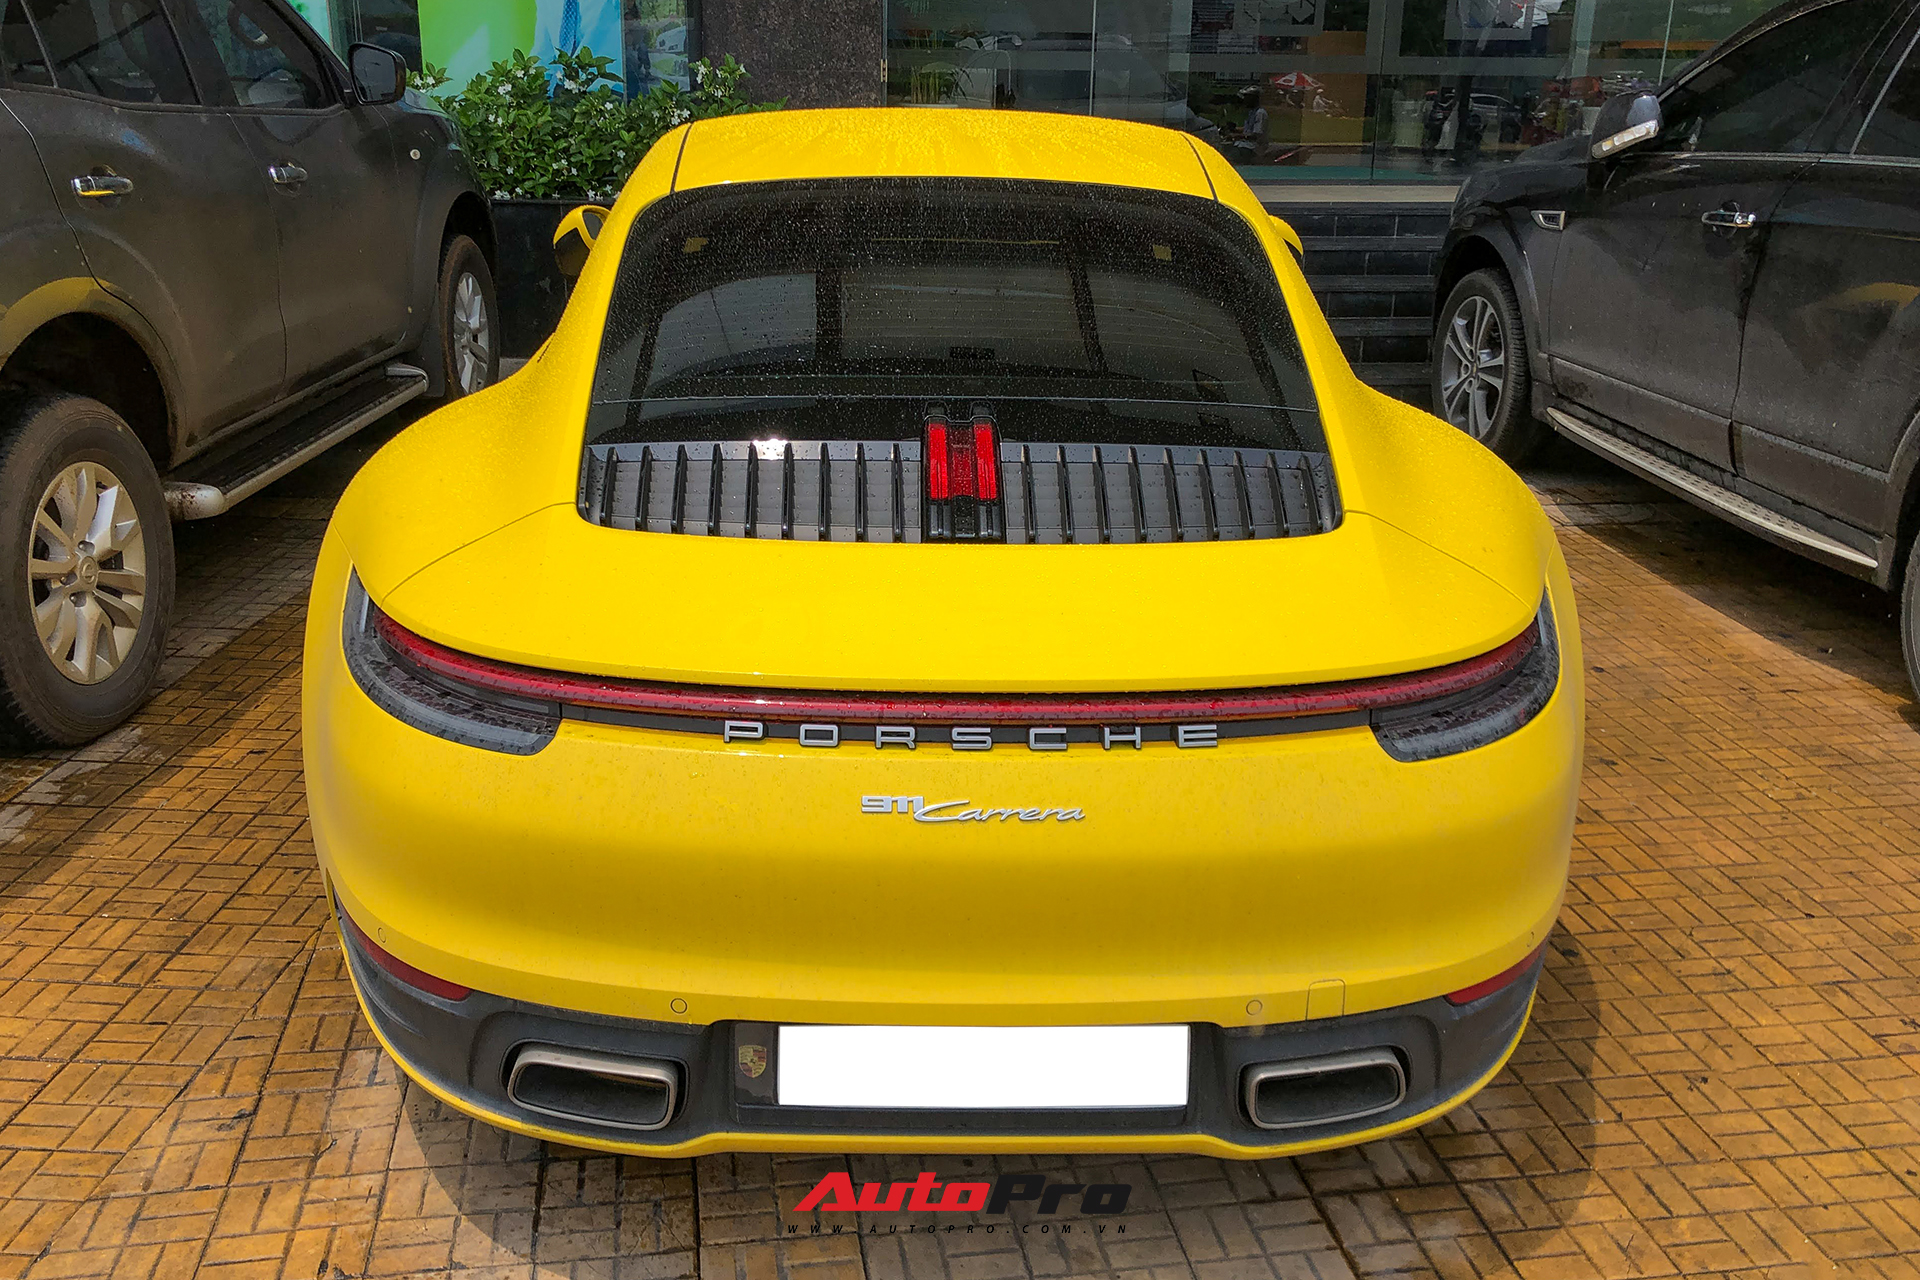 Đại gia Sài Gòn tậu Porsche 911 Carrera S thế hệ mới với màu vàng nổi bật - Ảnh 4.